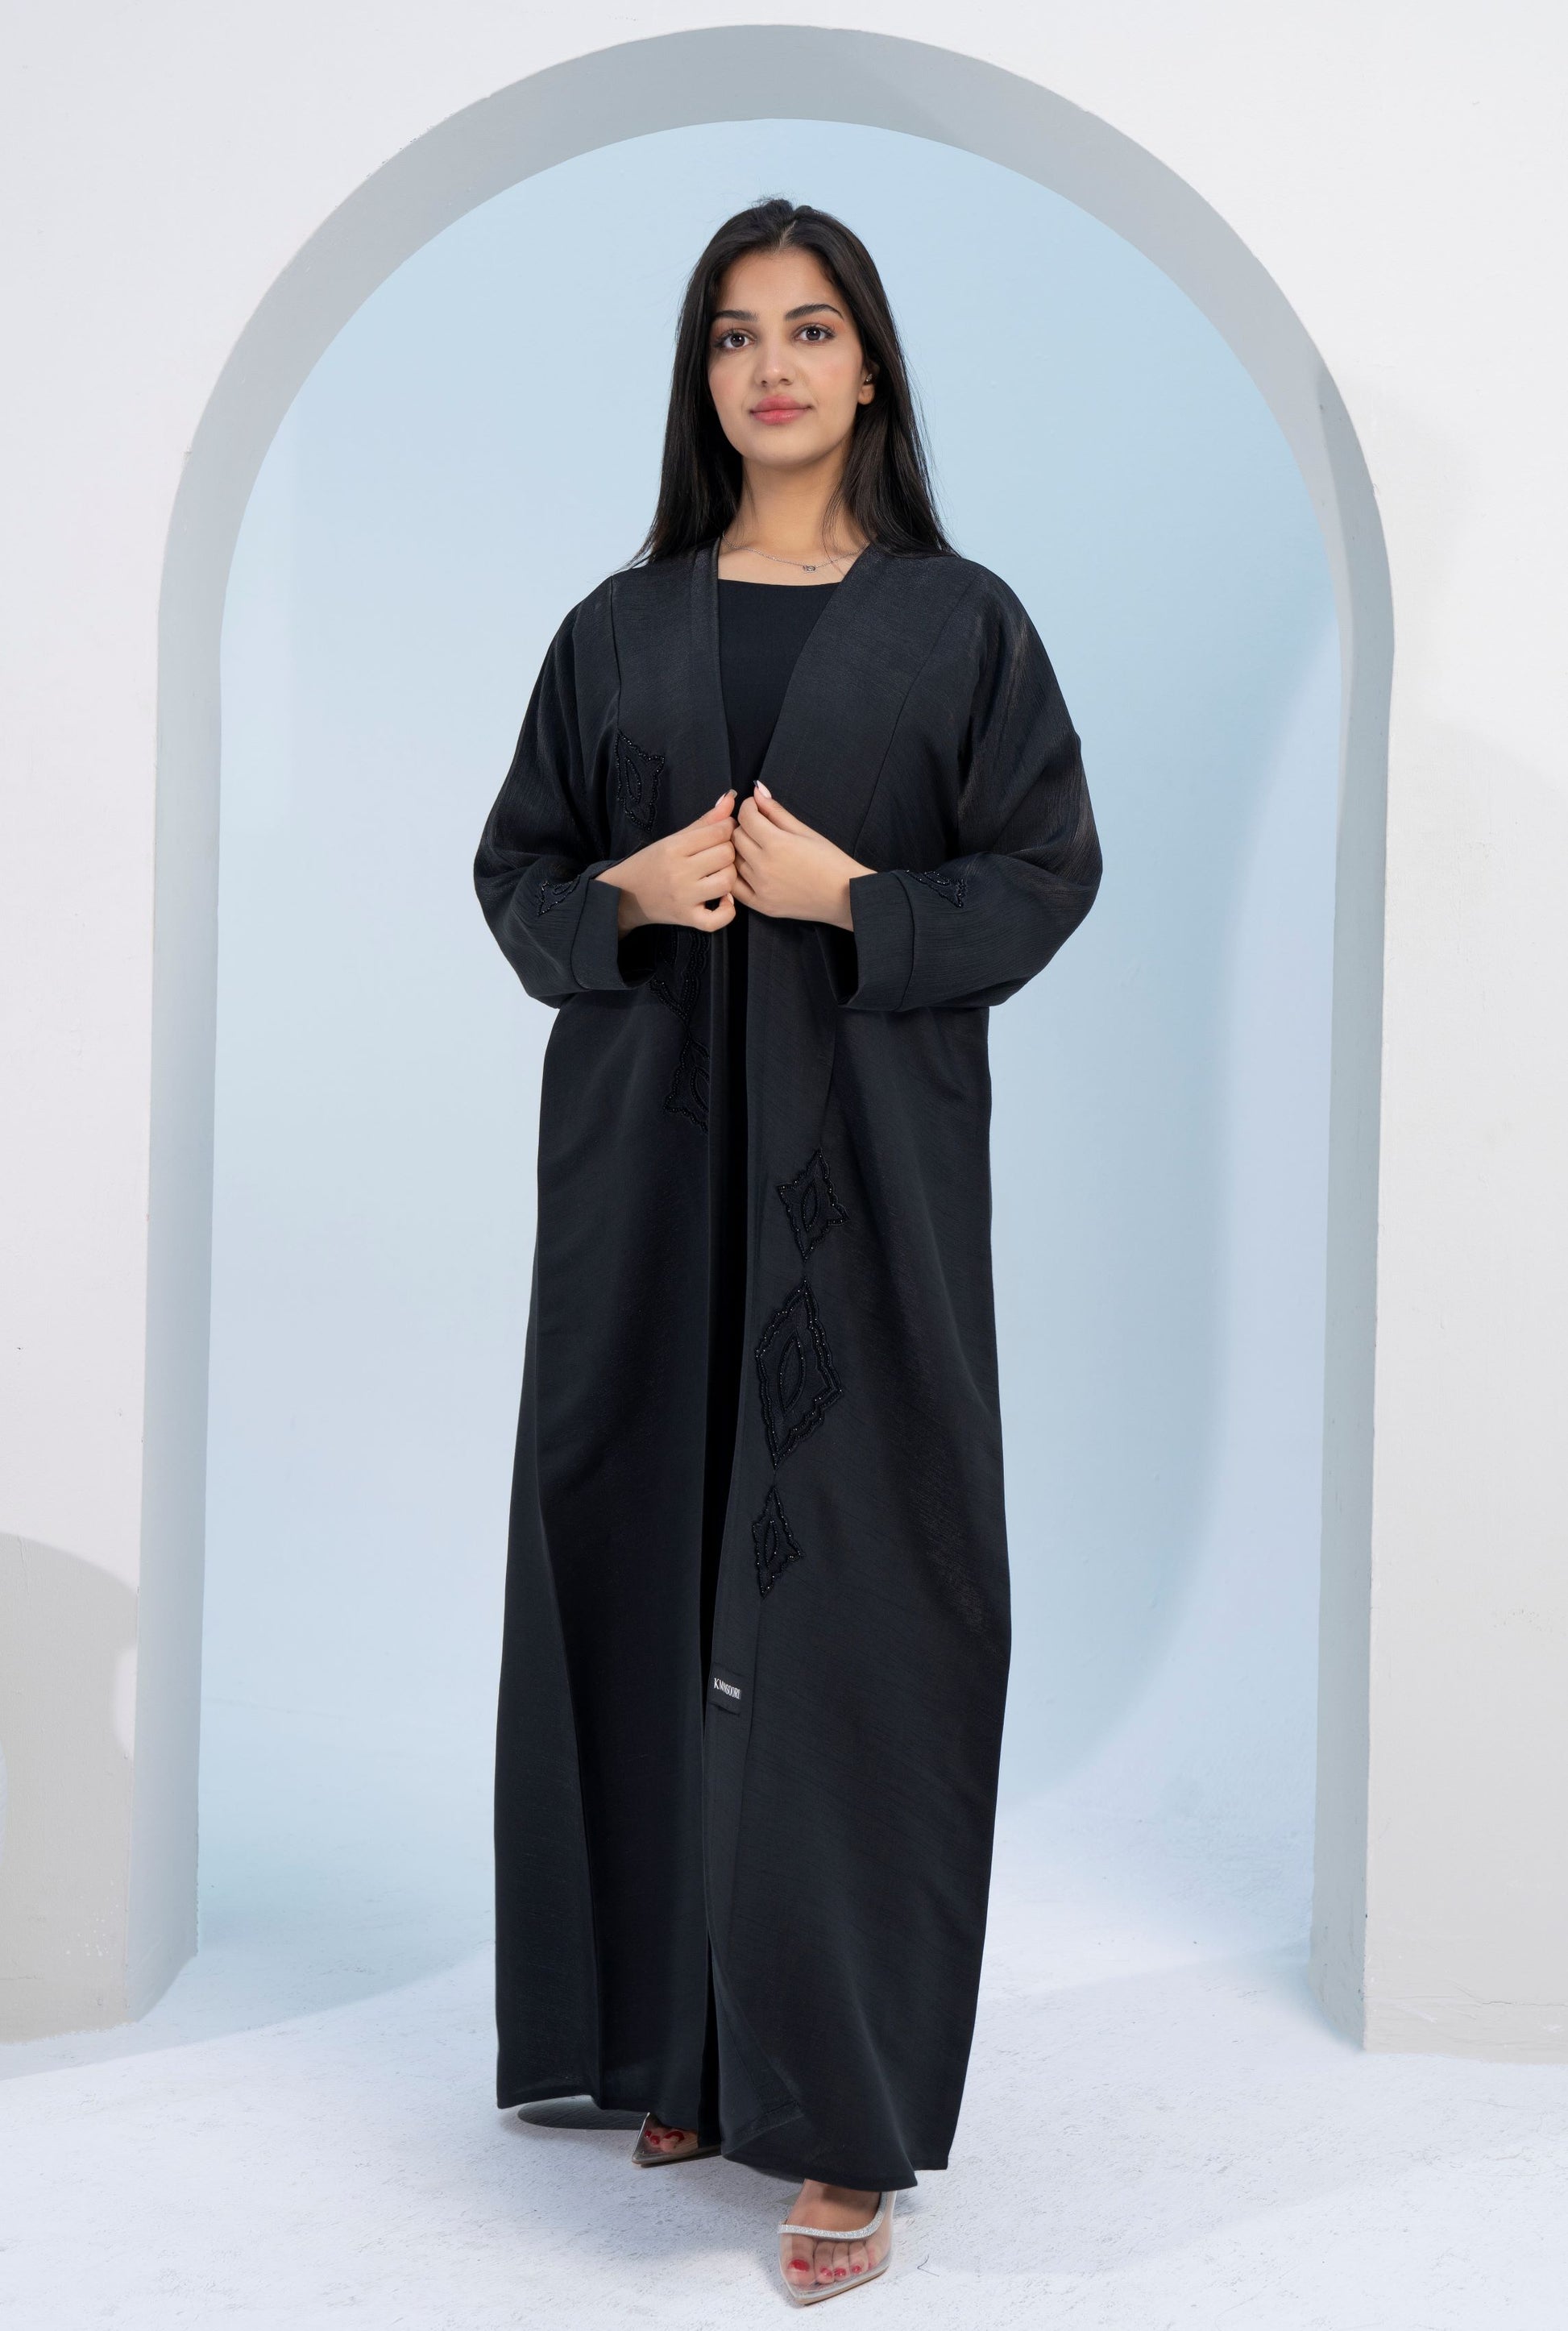 girl wearing black abaya dress